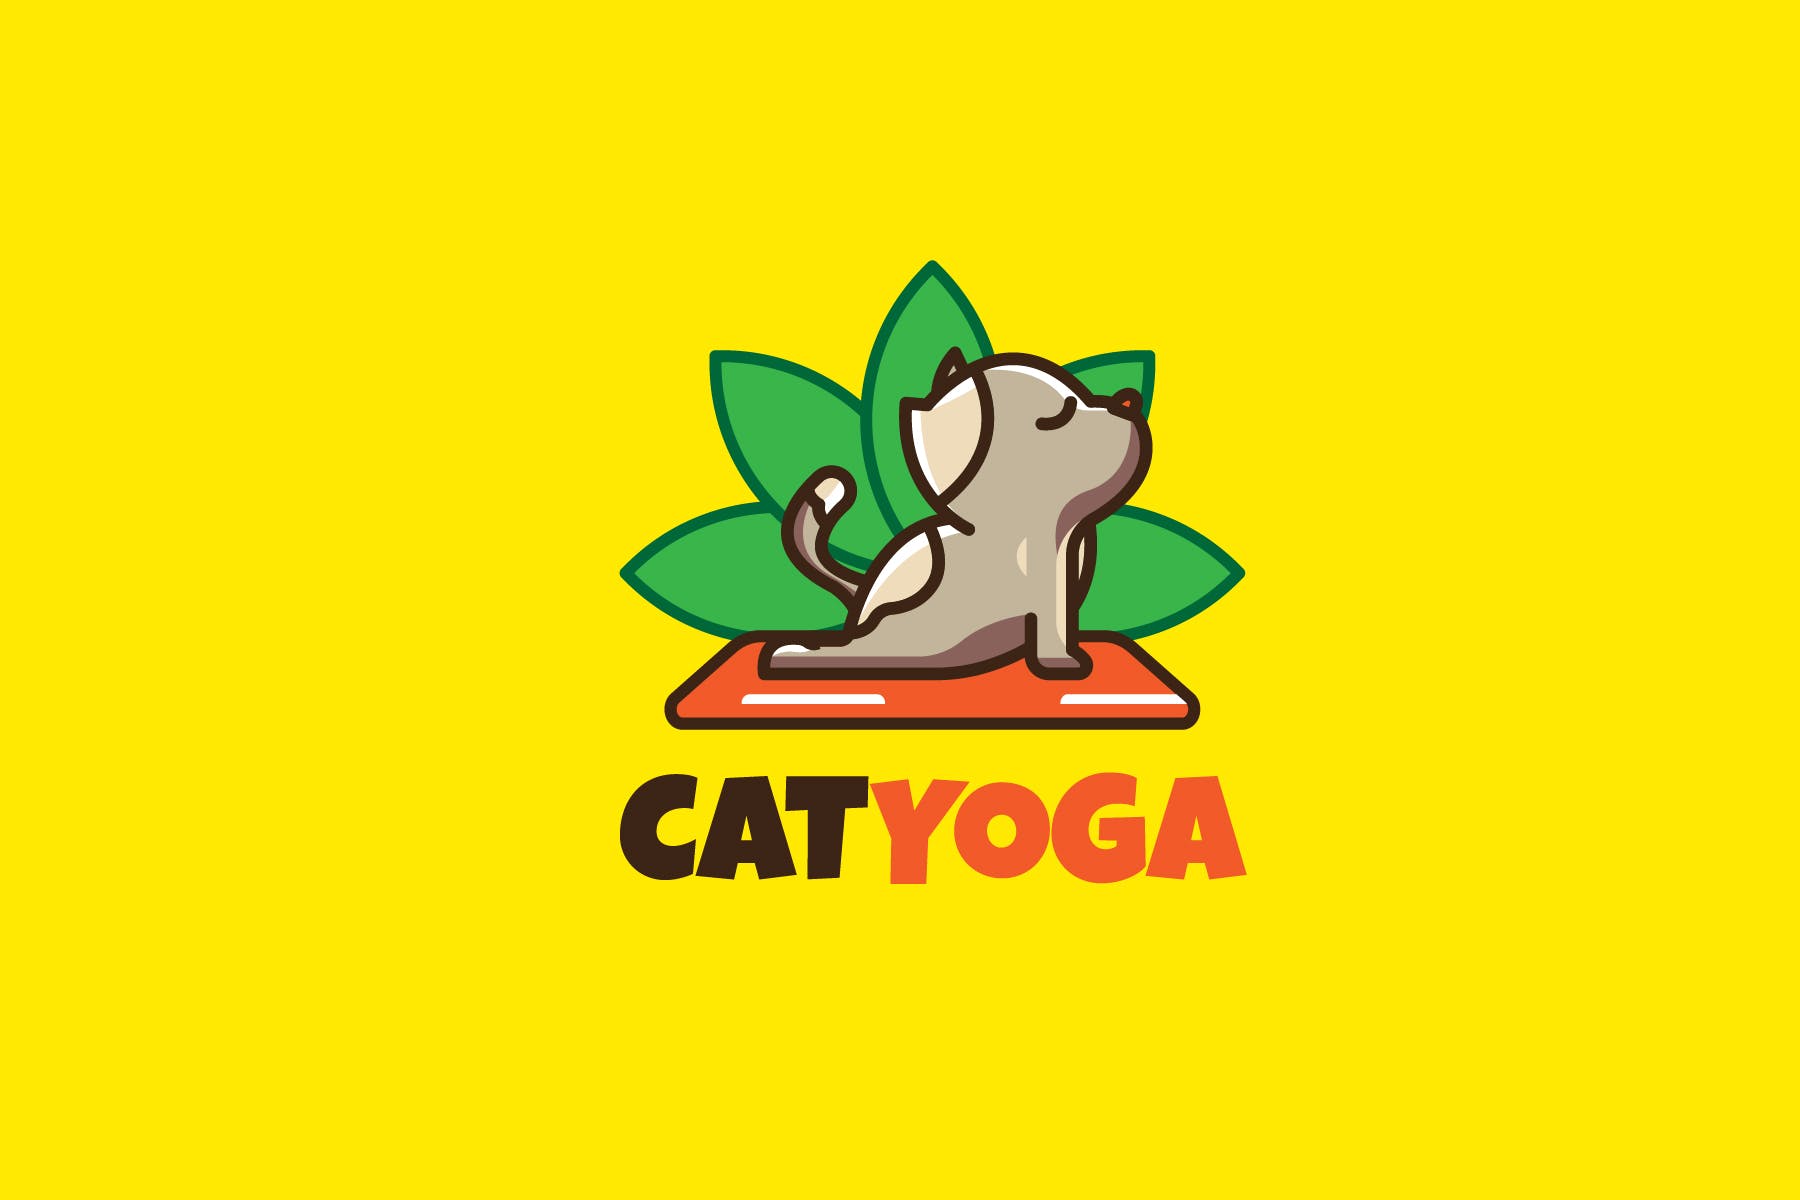 瑜伽猫咪卡通形象瑜伽品牌Logo设计素材中国精选模板 CAT YOGA – Mascot & Esport Logo插图